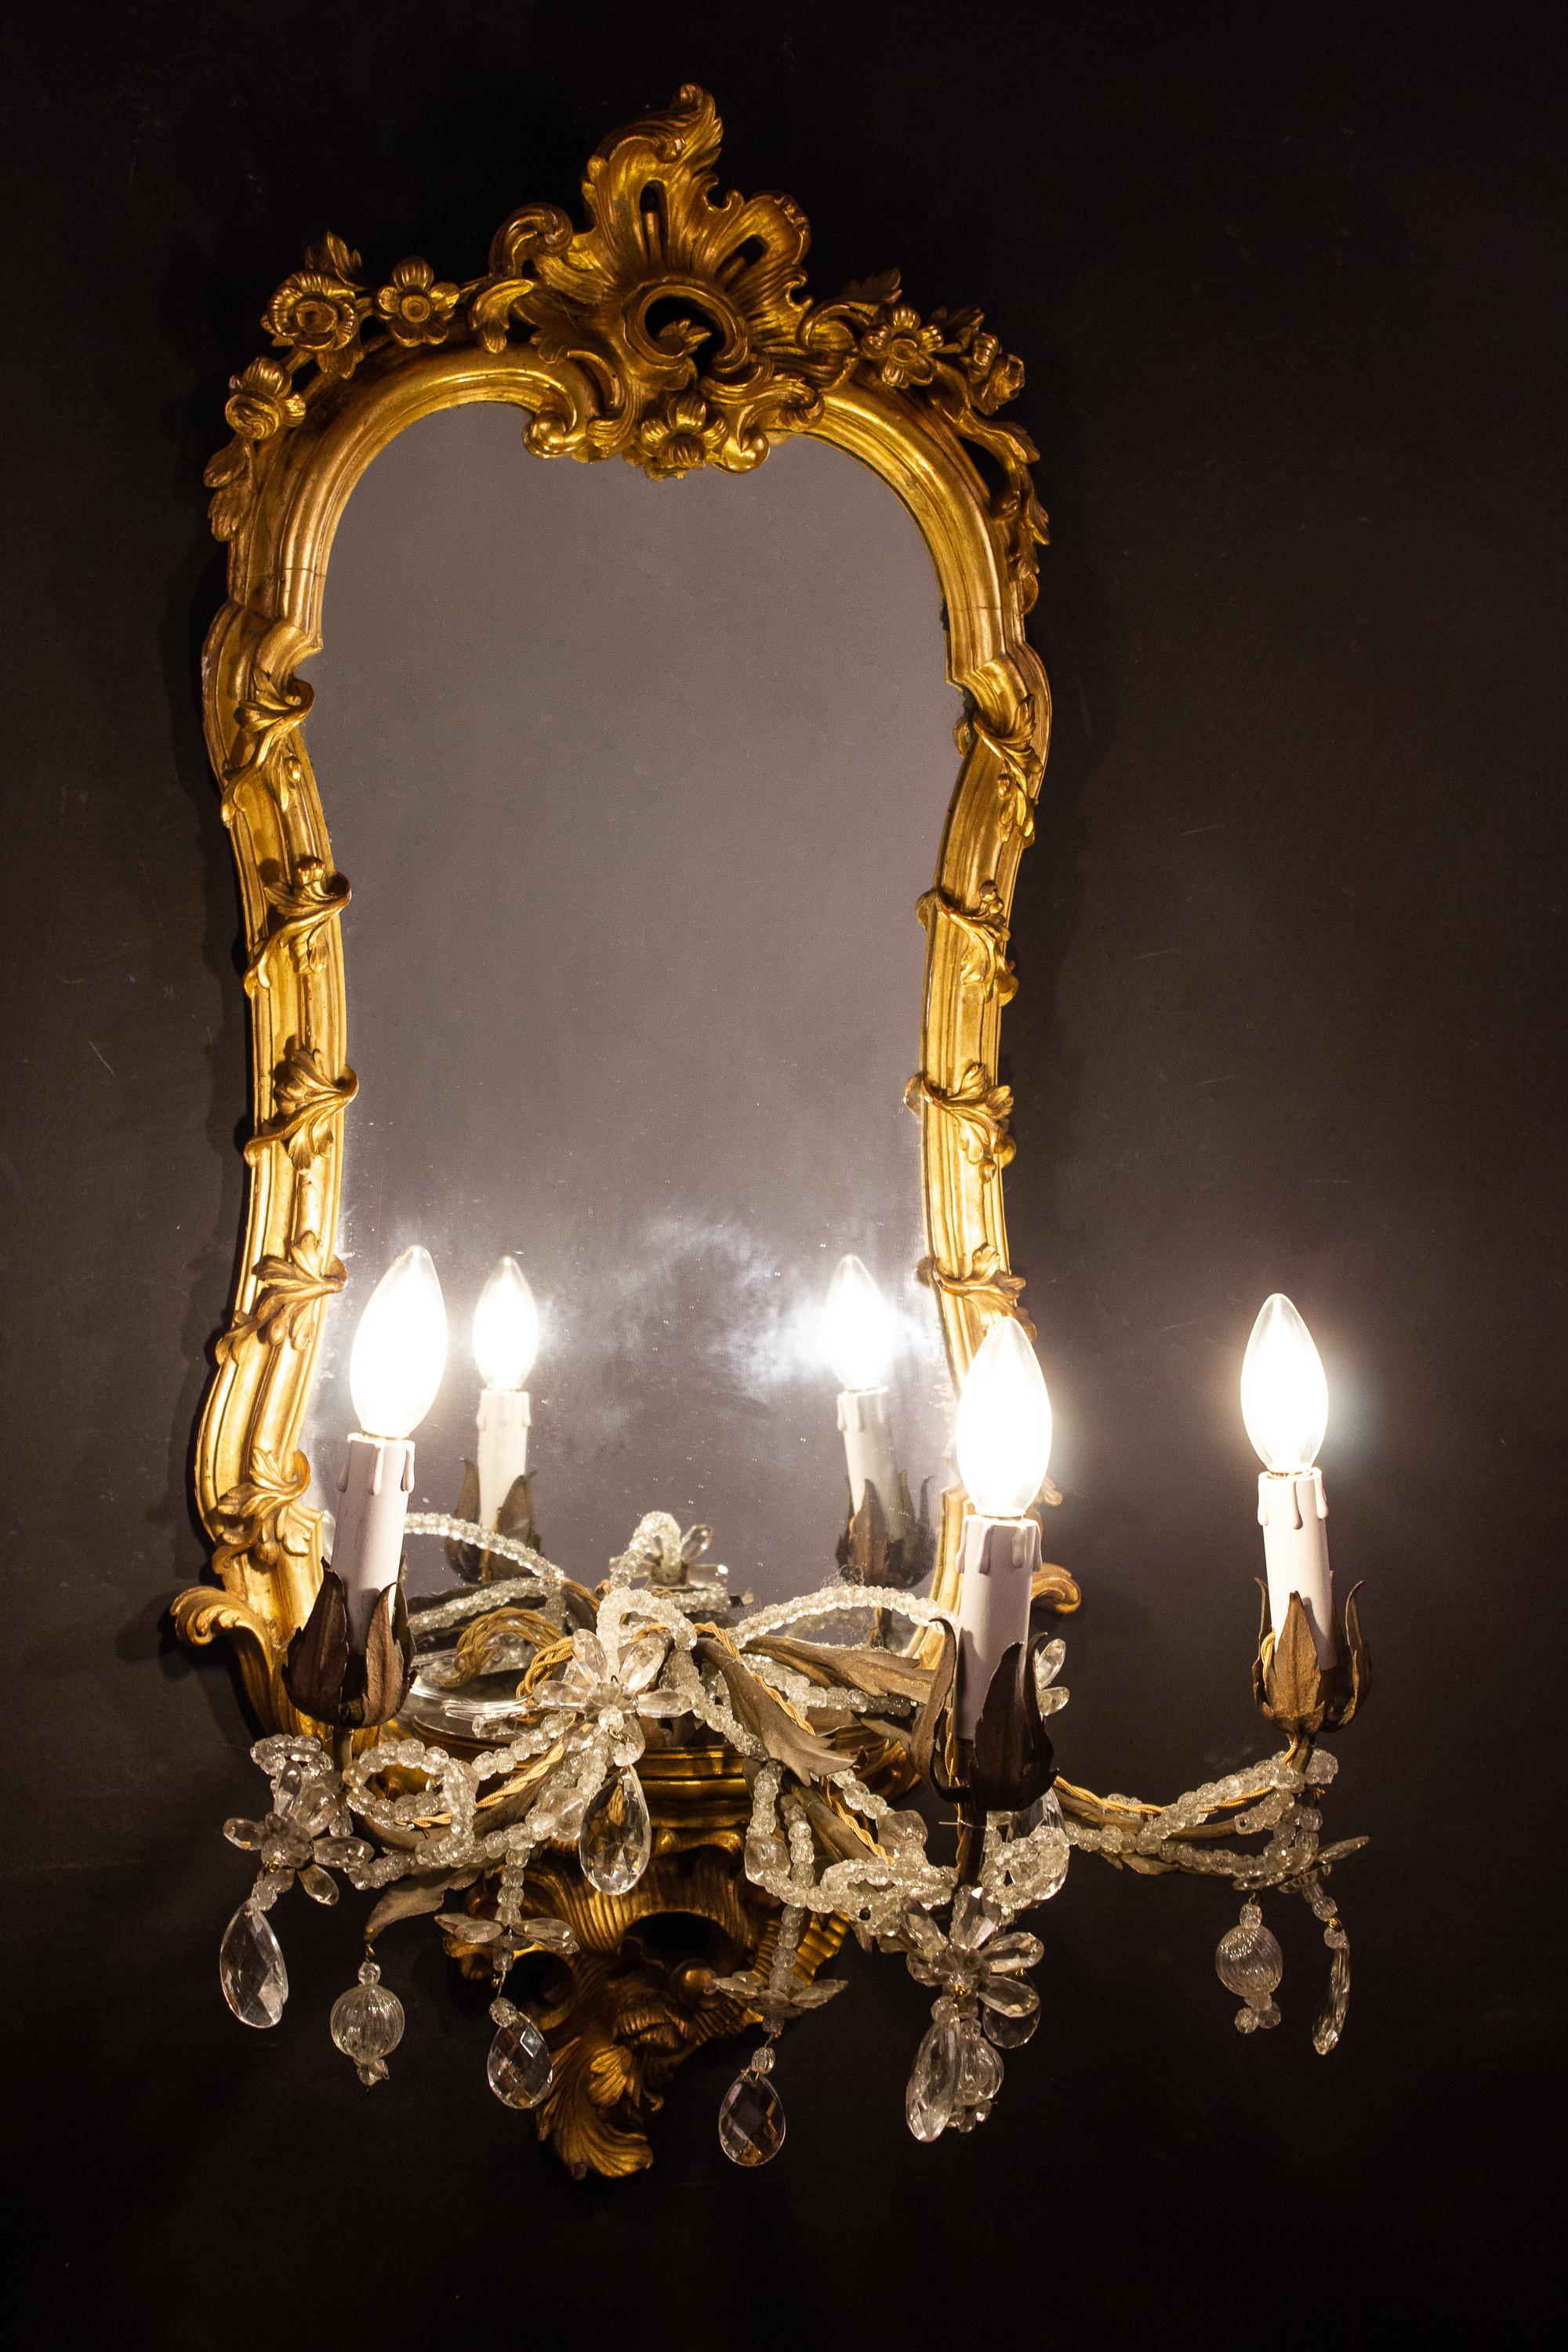 Wunderbarer seltener Satz von vier fein geschnitzten und vergoldeten Spiegeln aus dem 18. Jahrhundert mit drei Kerzenarmen. Rom, 1750.
 Die Kerzenarme können auch abgenommen und als Sockel für eine Vase oder Porzellanskulptur verwendet werden.
